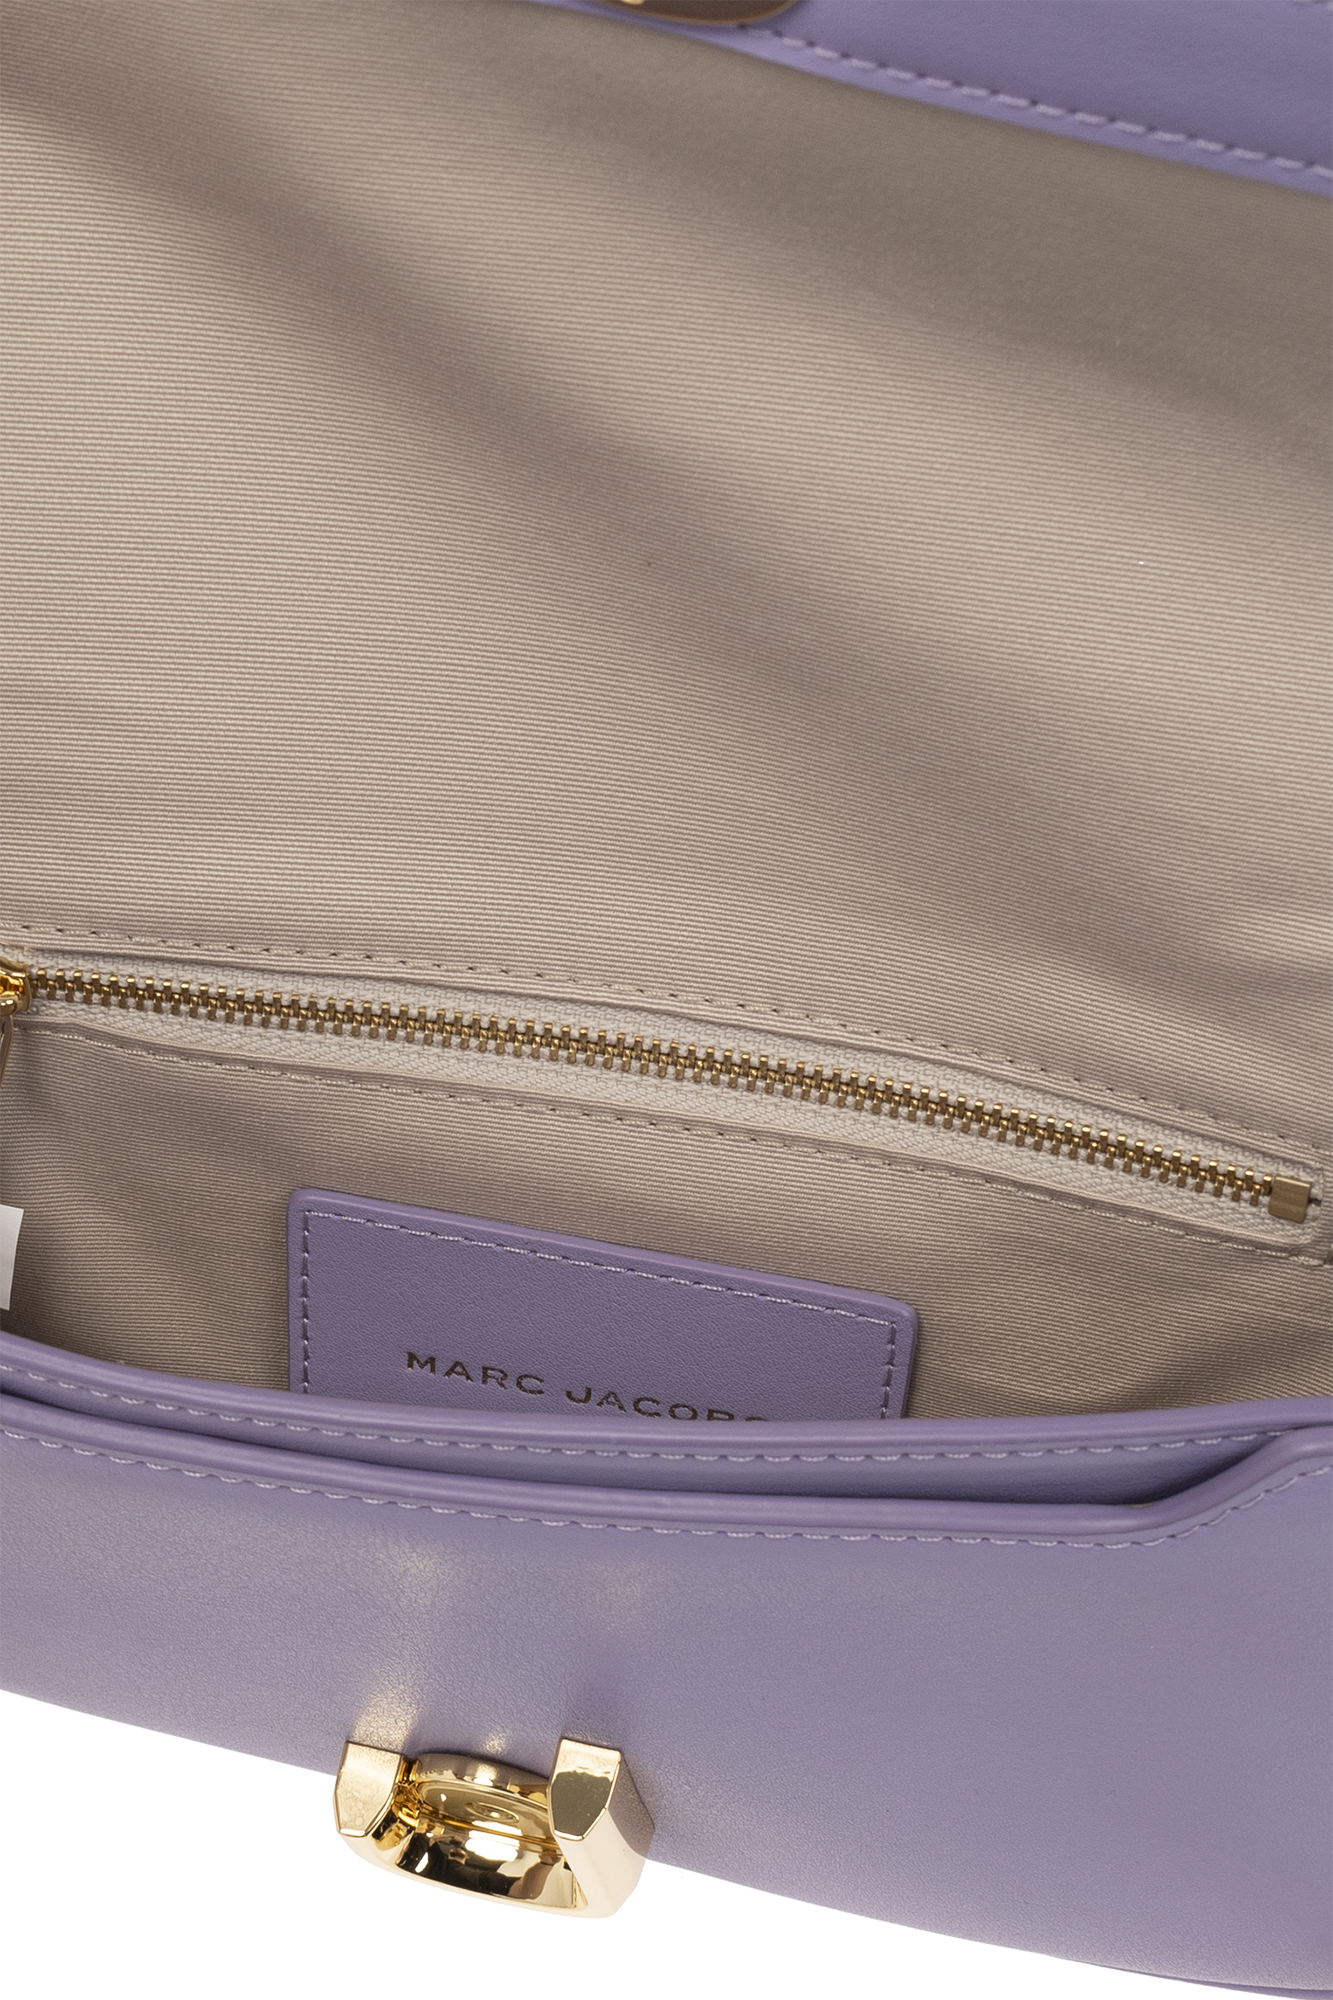 MARC JACOBS: The J leather bag - Violet  Marc Jacobs shoulder bag  H956L01PF22 online at